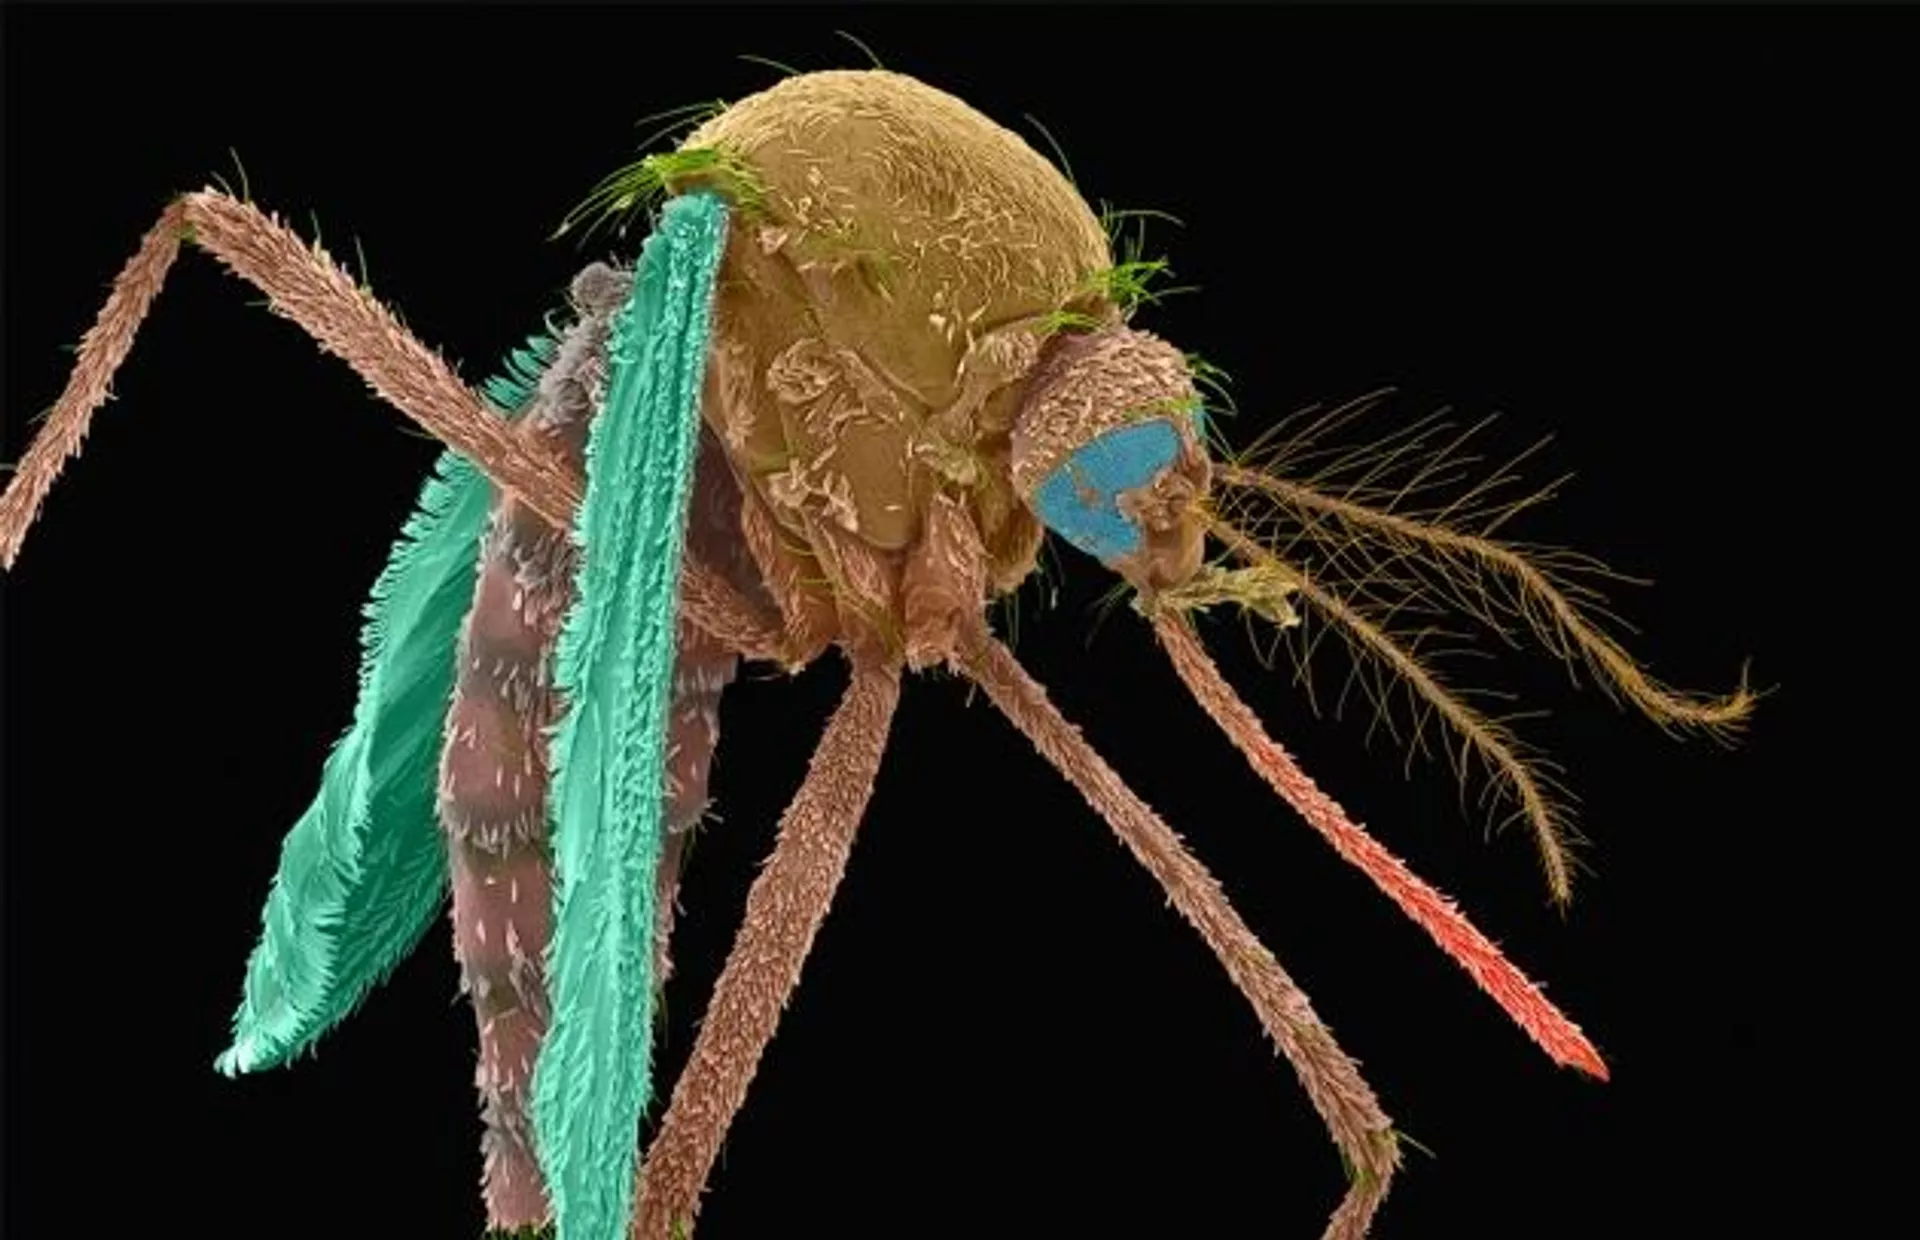 Выращенные в лаборатории москиты, разработанные MosquitoMate, направлены на уничтожение диких комаров переносчиков болезней  - РИА Новости, 1920, 02.06.2021